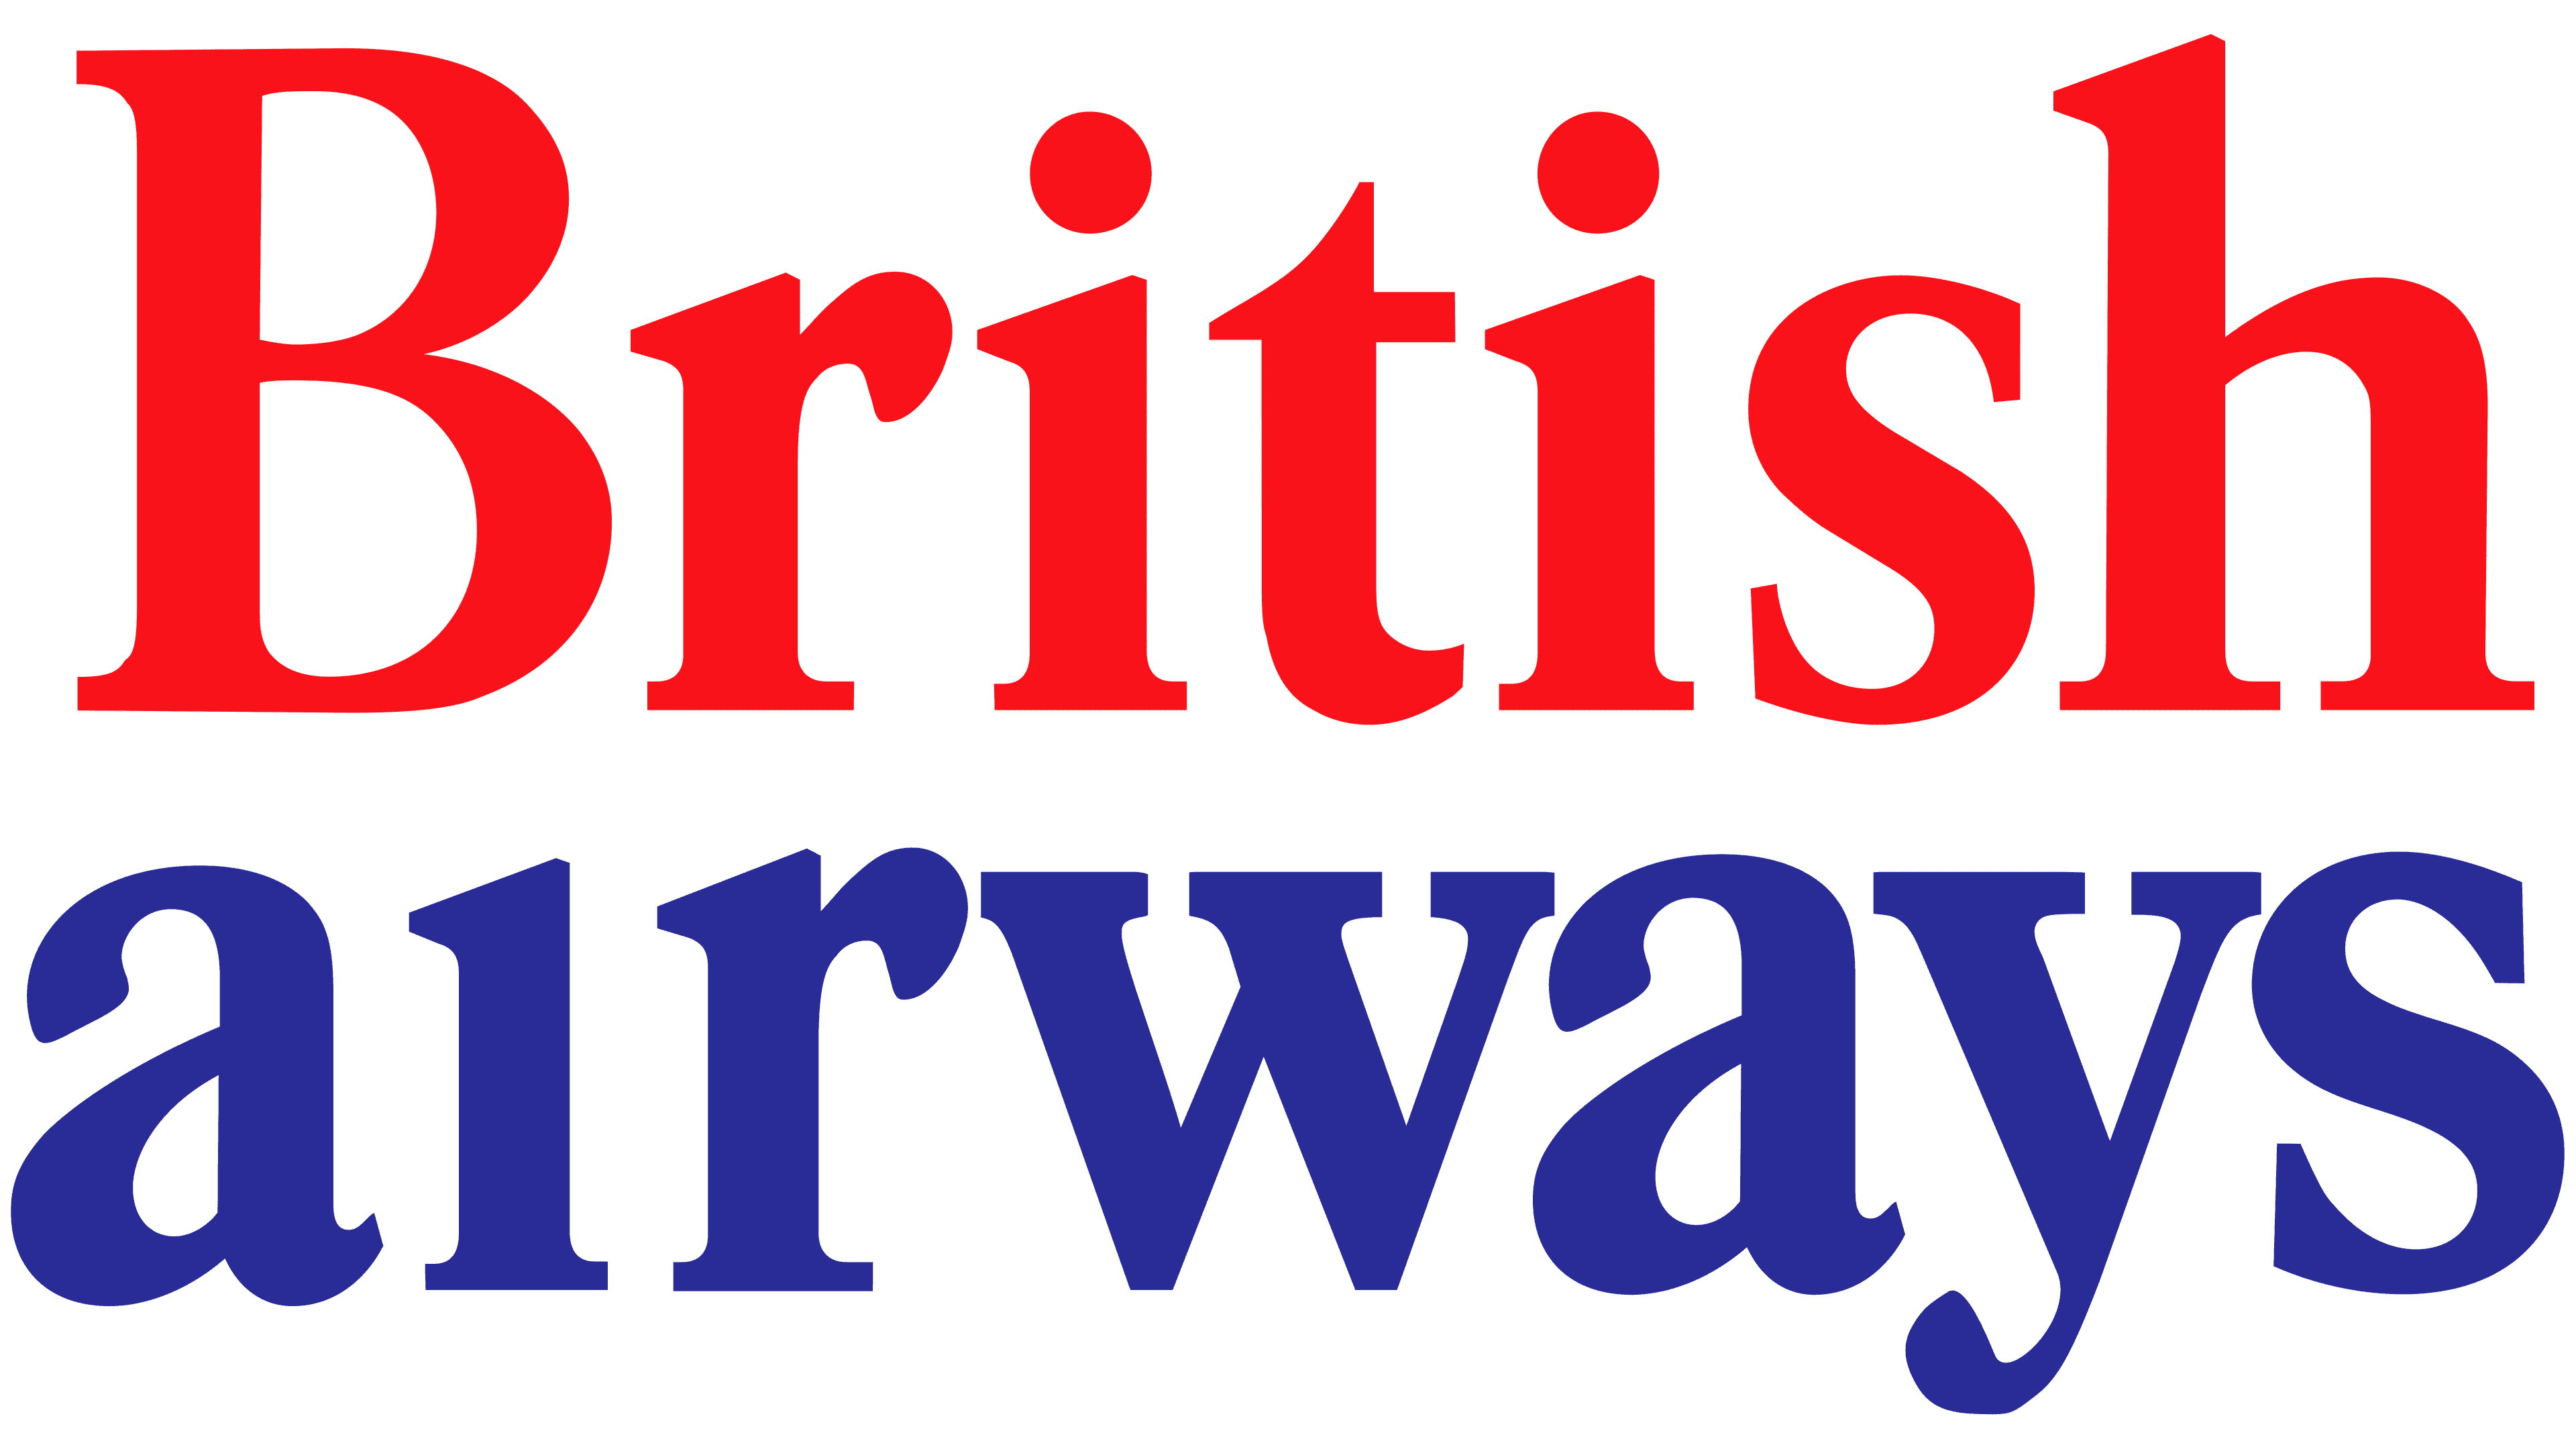 british airways logo 1974